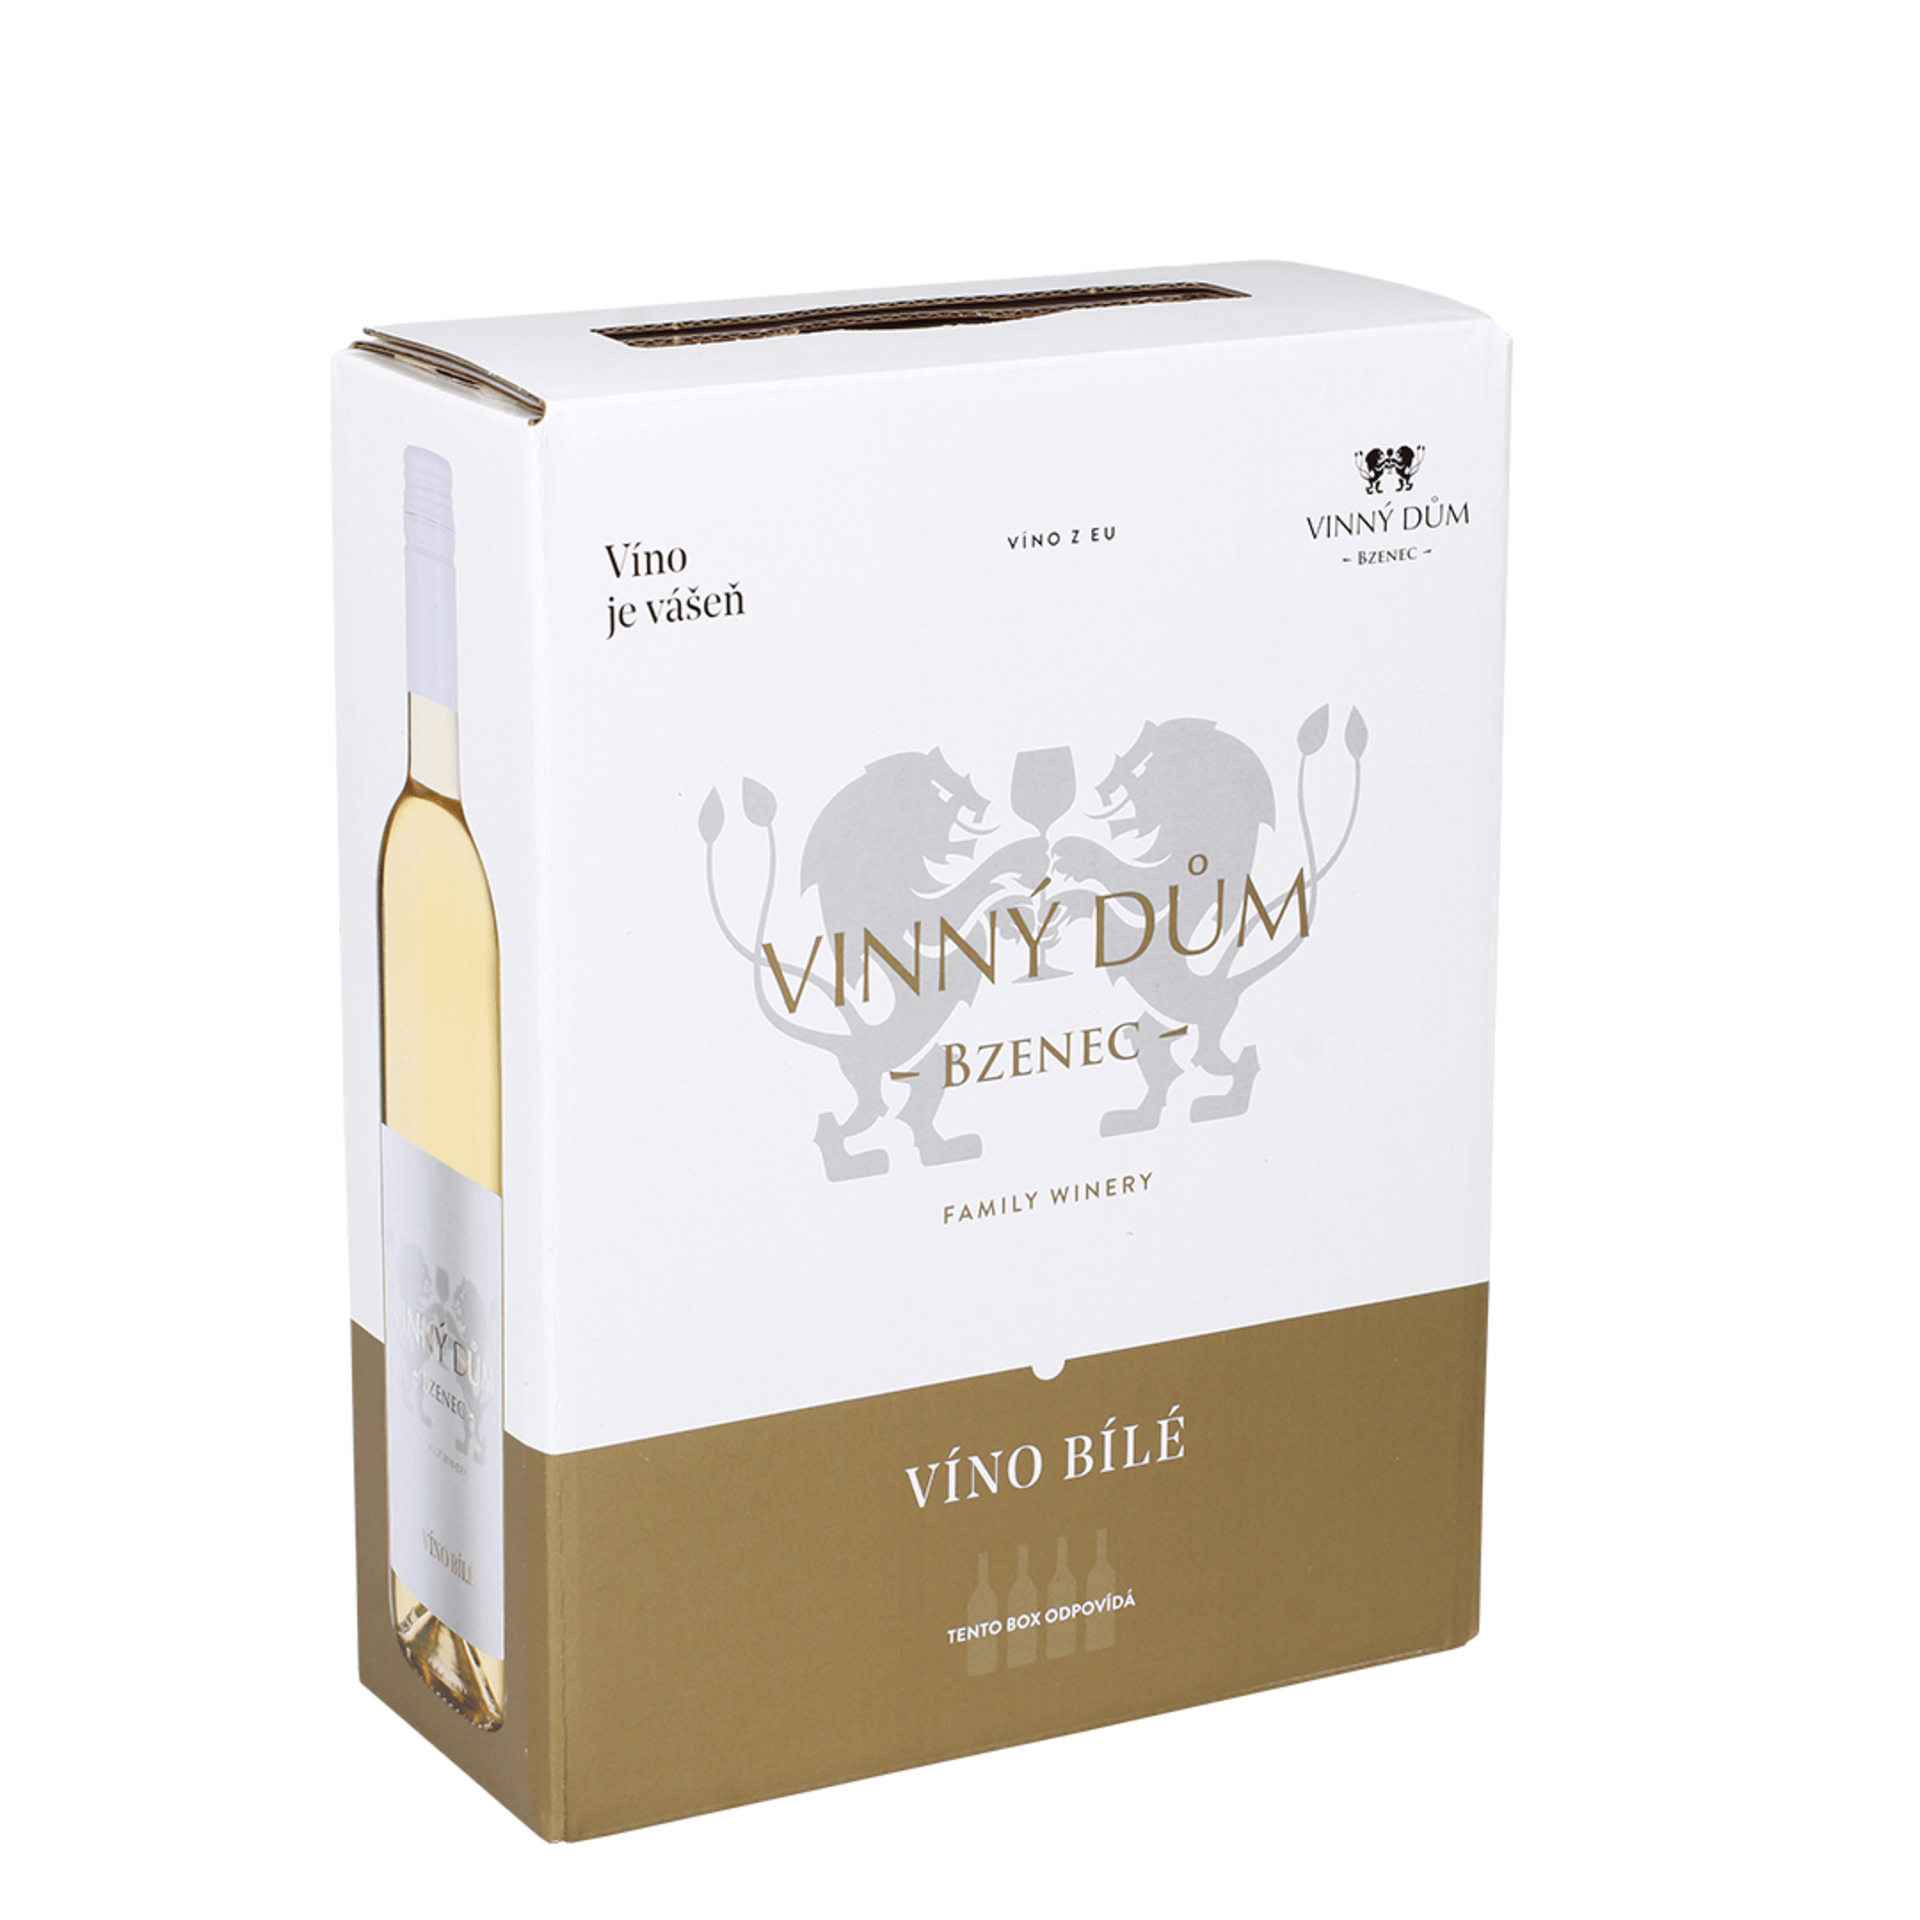 Vinný dům Pinot Gris 2020 bílé víno polosuché BAG IN BOX 5 l